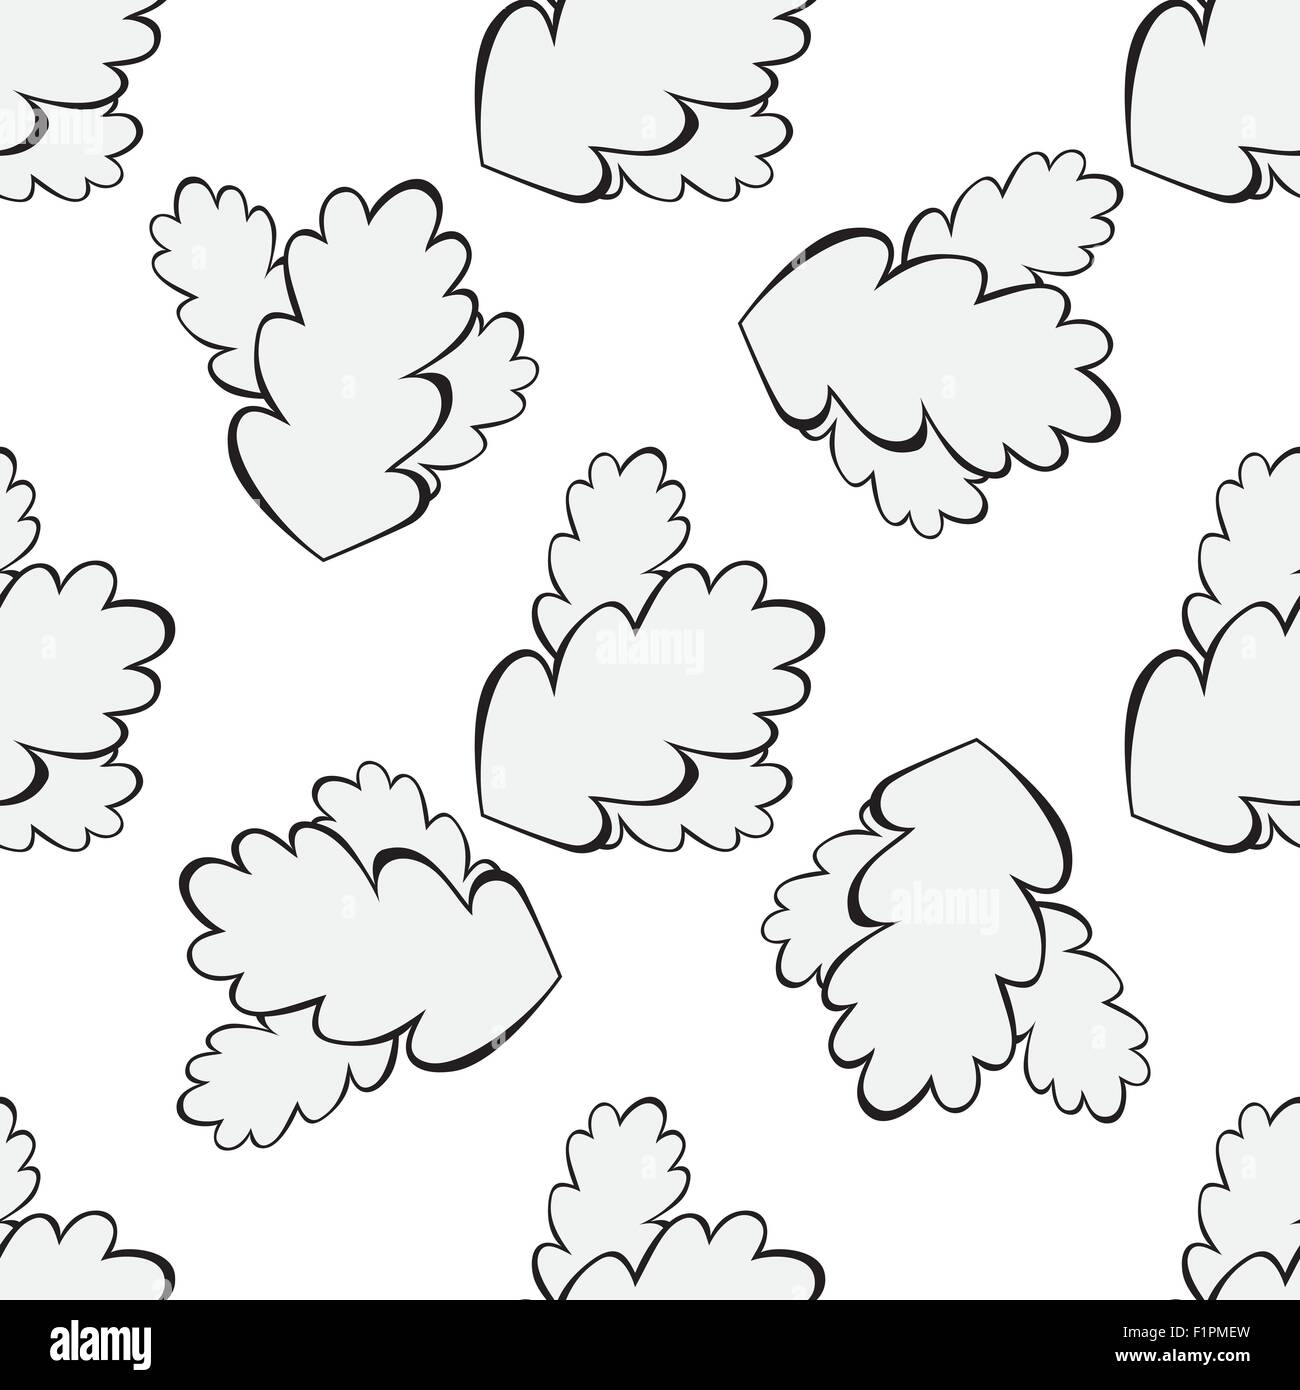 Feuille de chêne gris seamless background Vector illustration Illustration de Vecteur